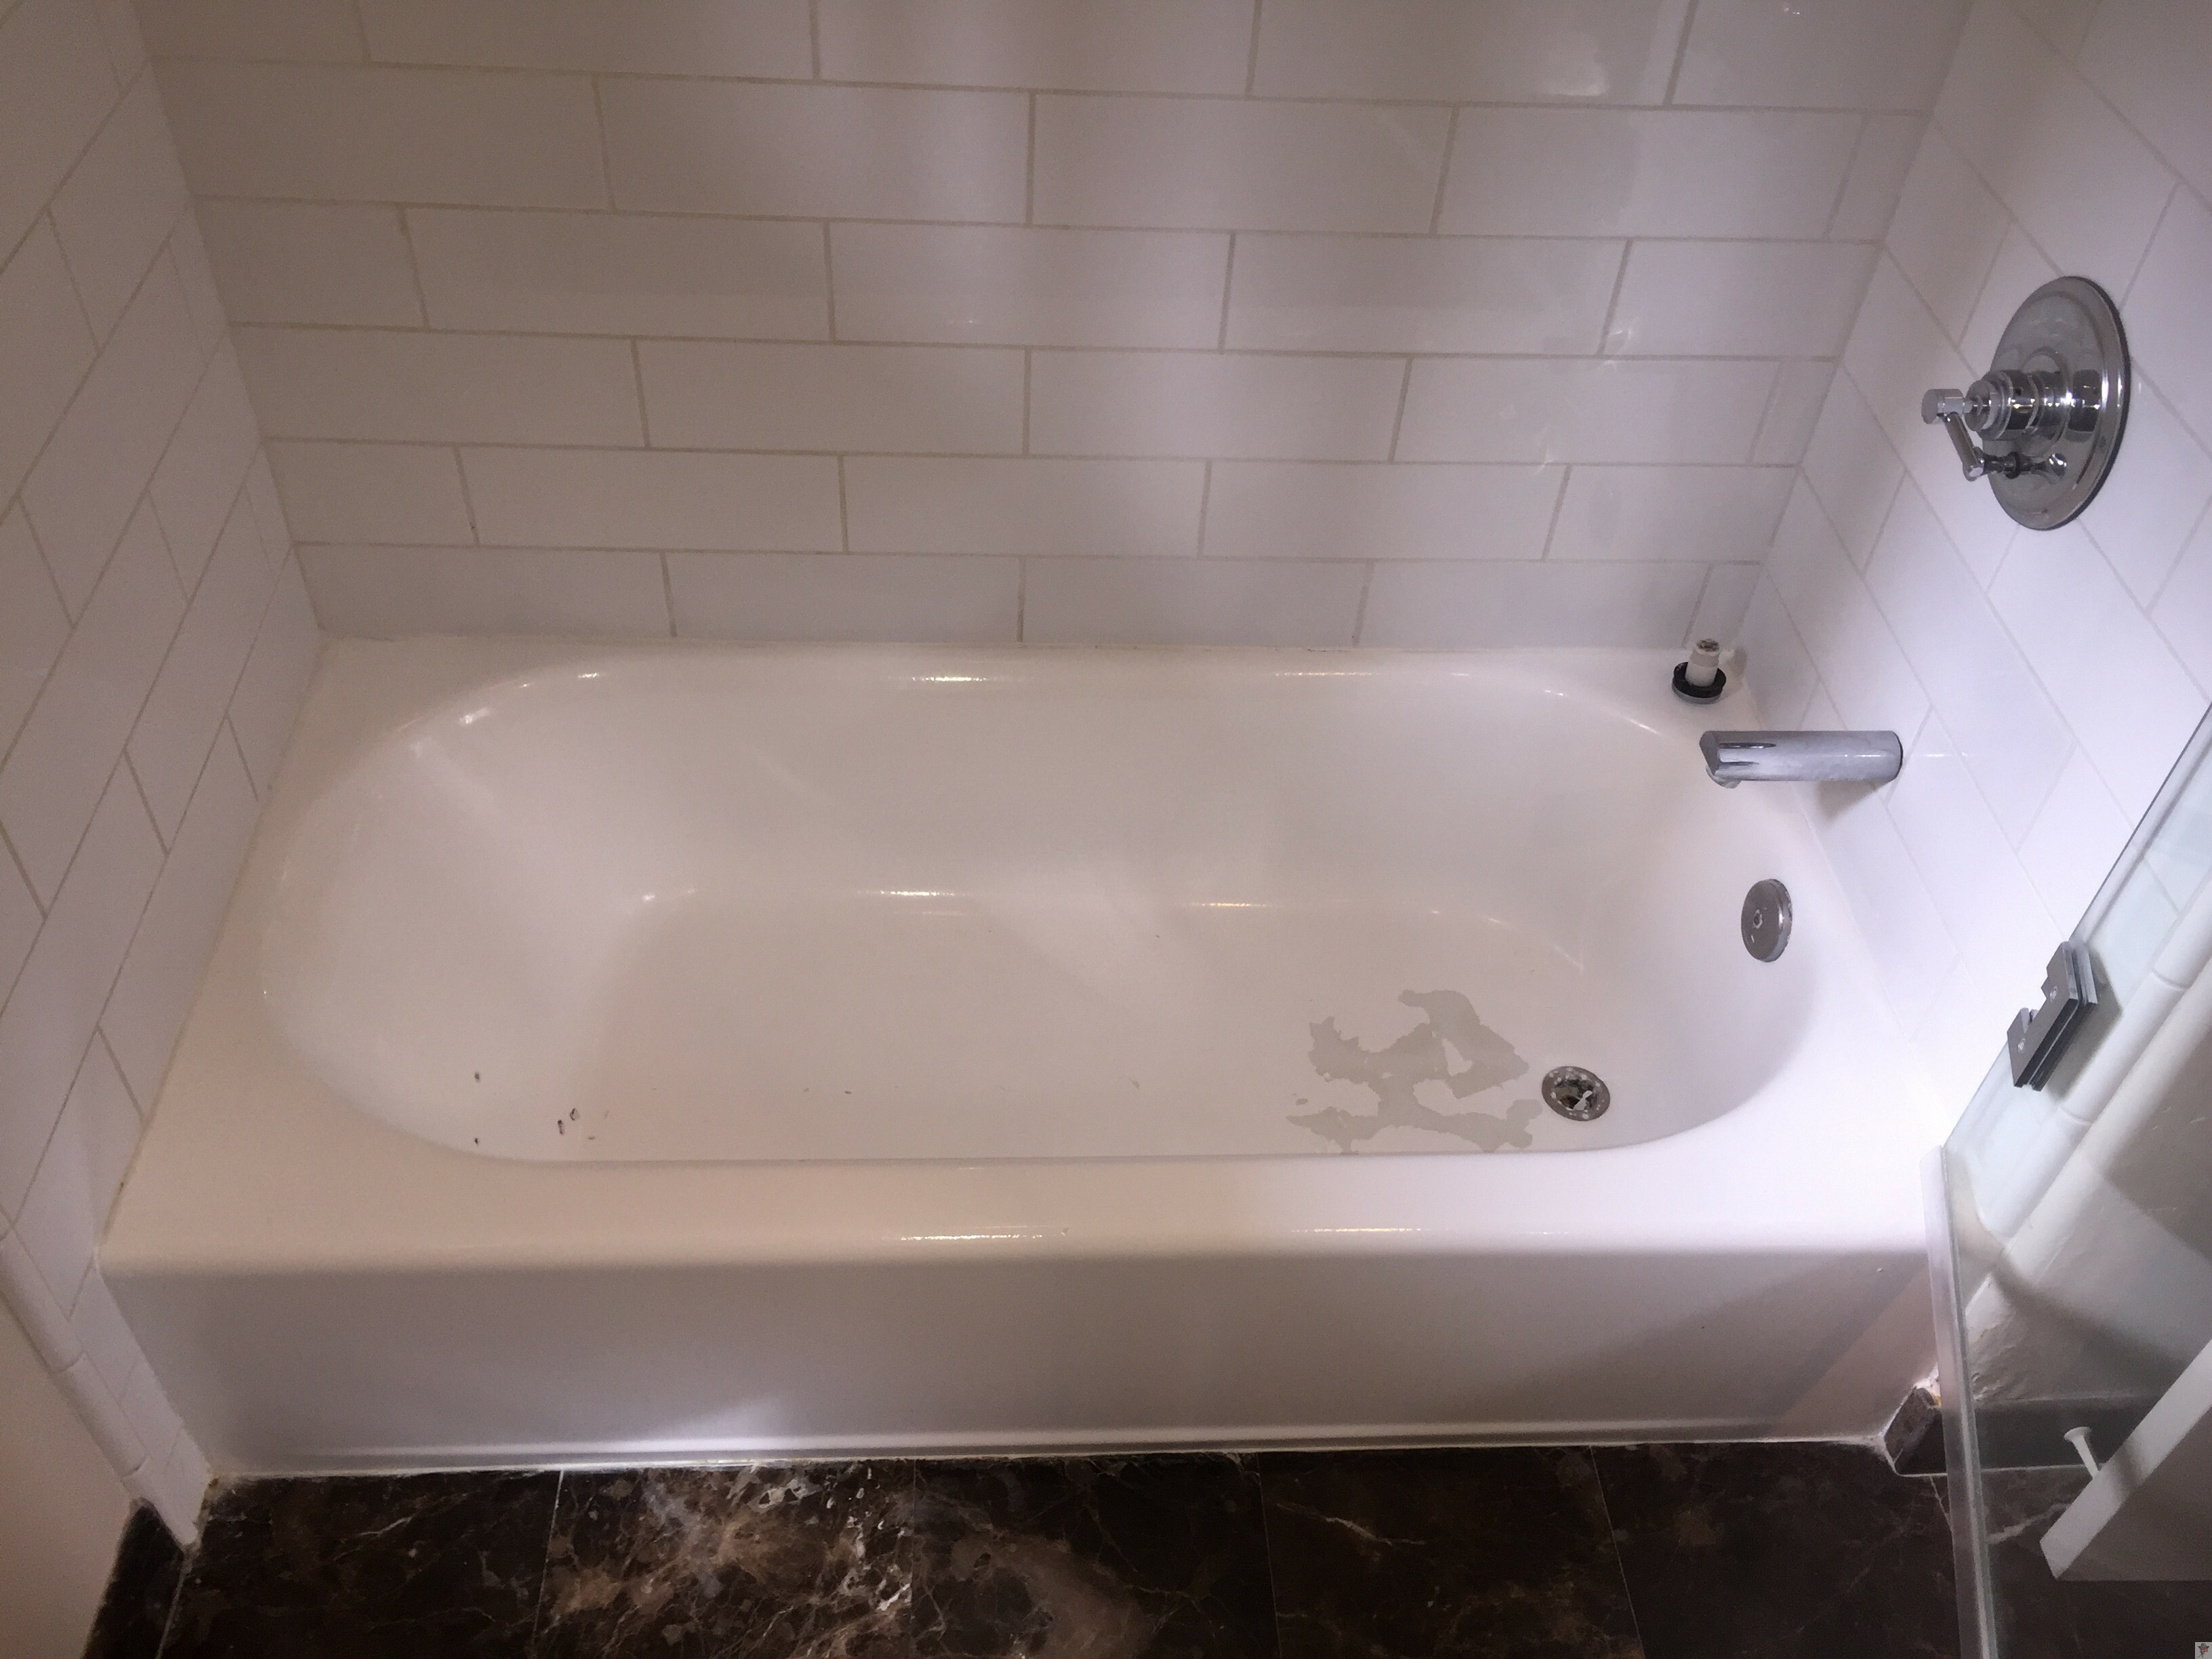 Ling Tub Bathtub Refinish, How To Paint A Chipped Bathtub